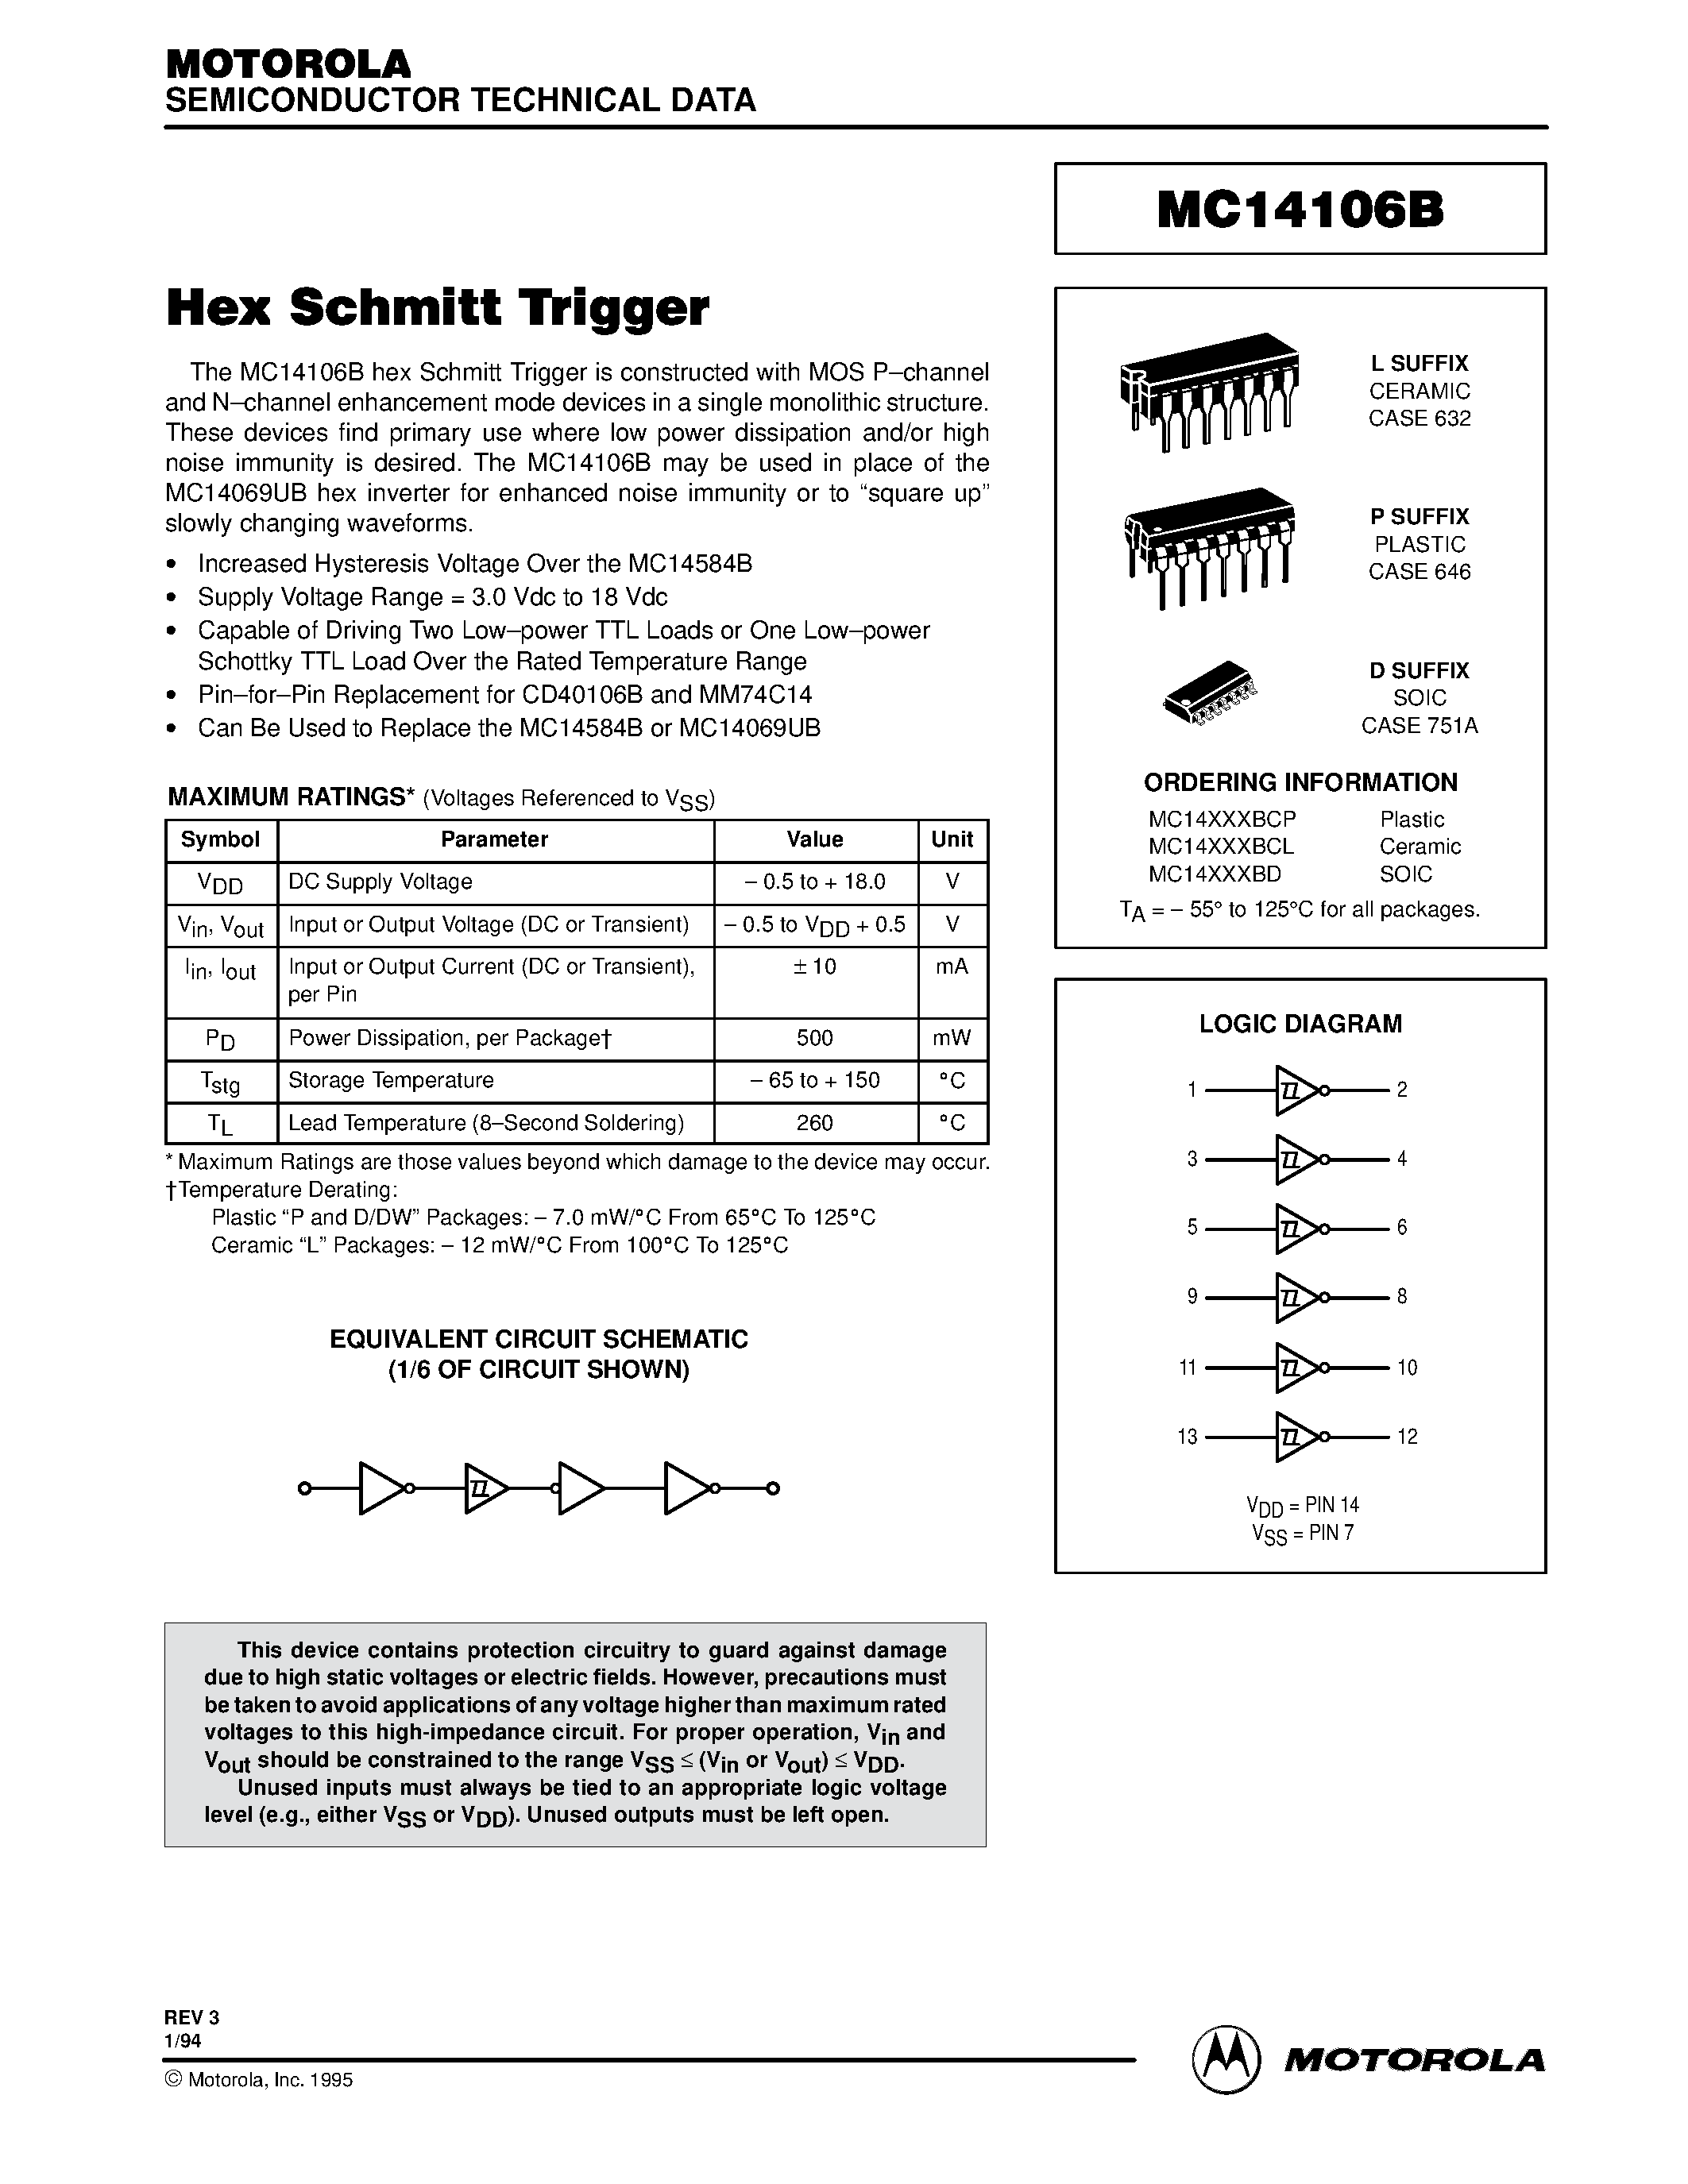 Даташит MC14106BCL - Hex Schmitt Trigger страница 1